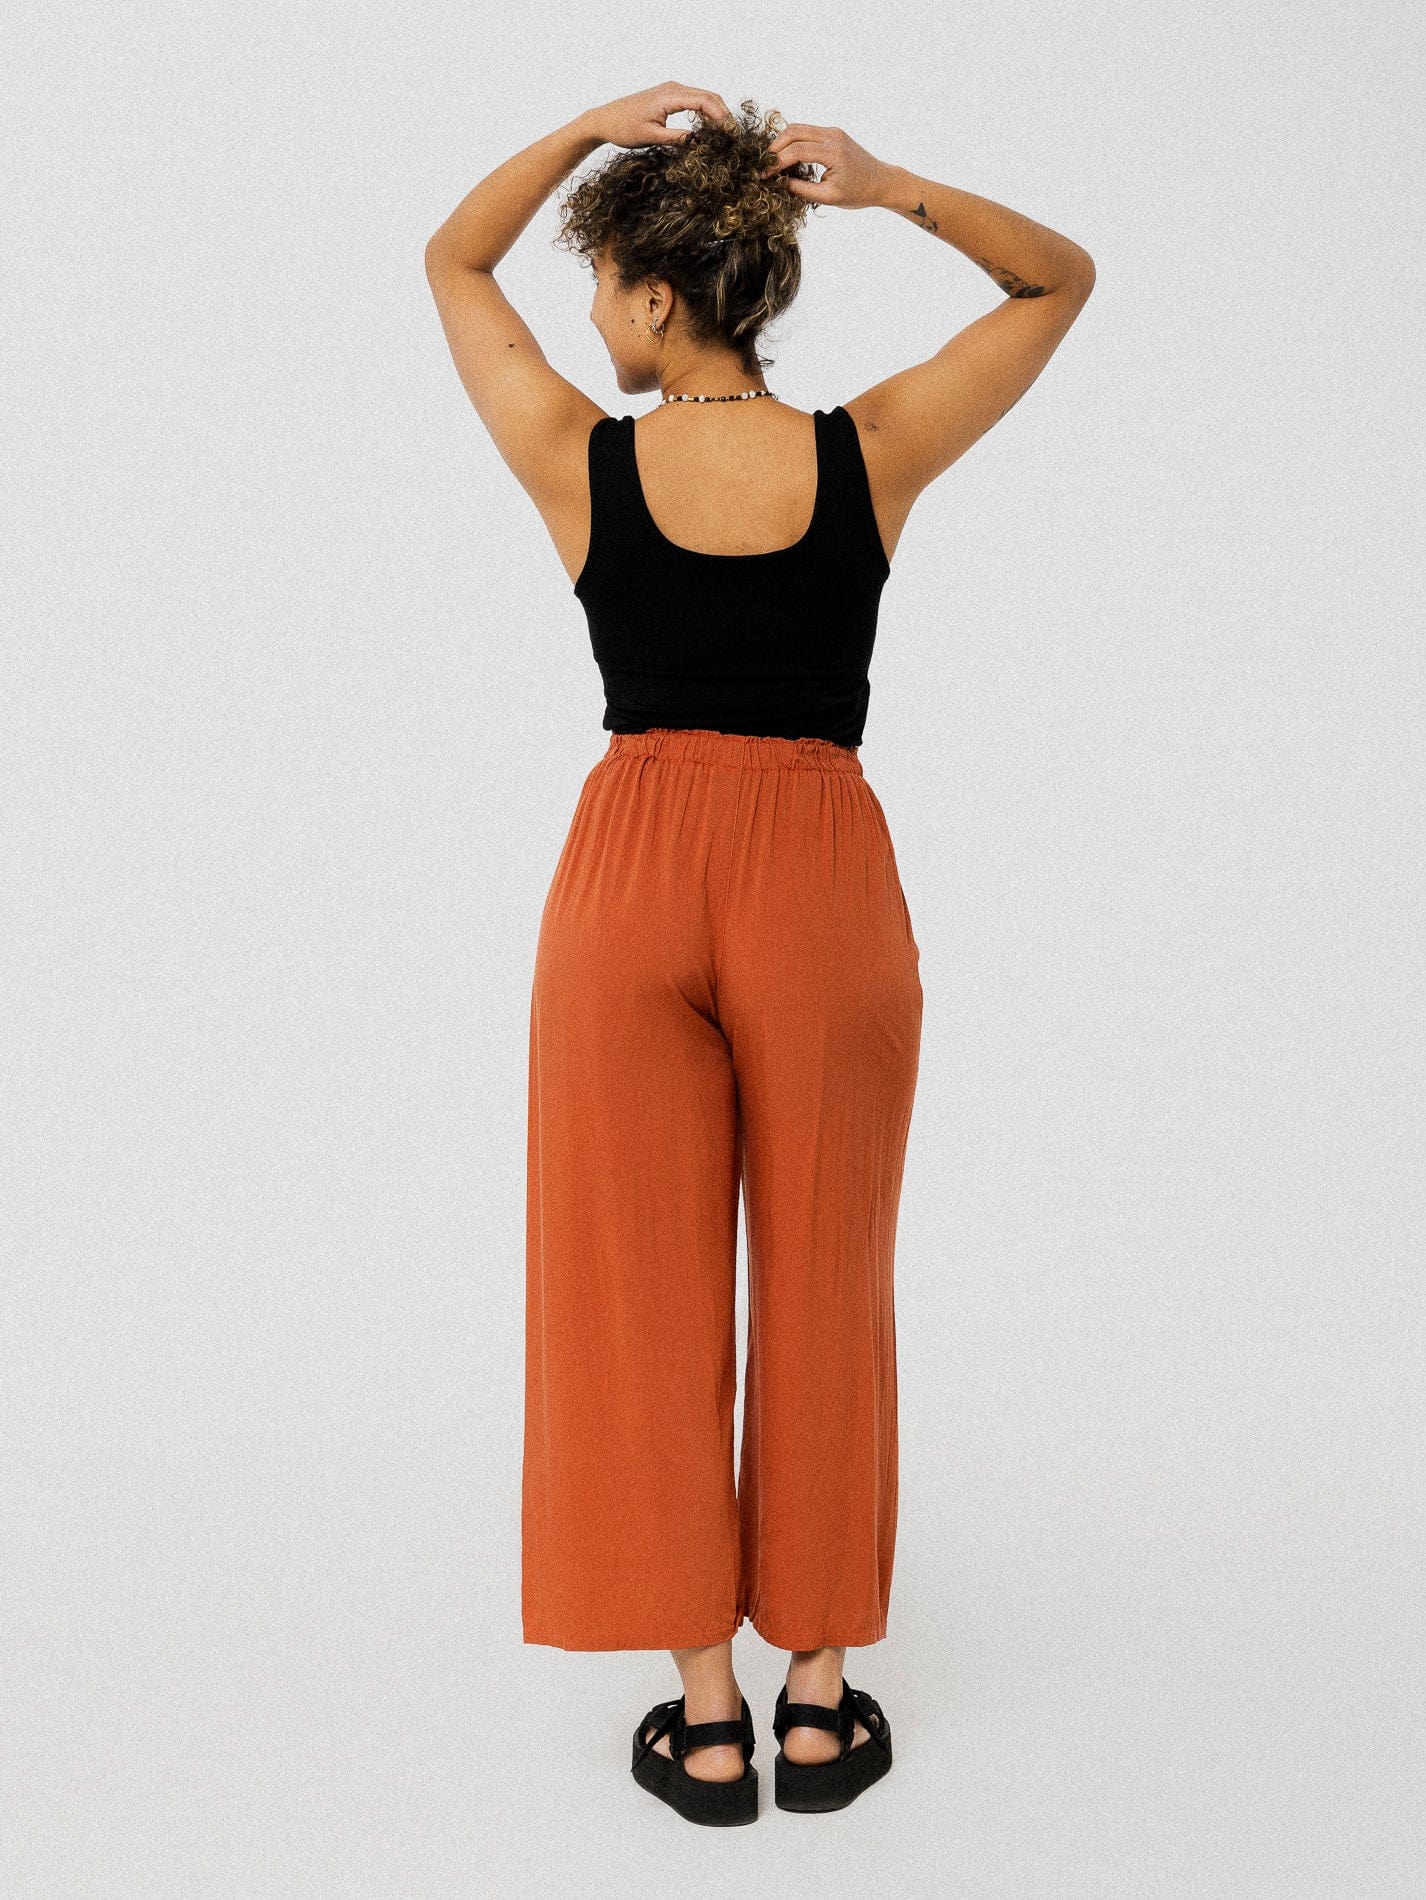 Pantalon orange brûlé ample et confortable avec ceinture à la taille.